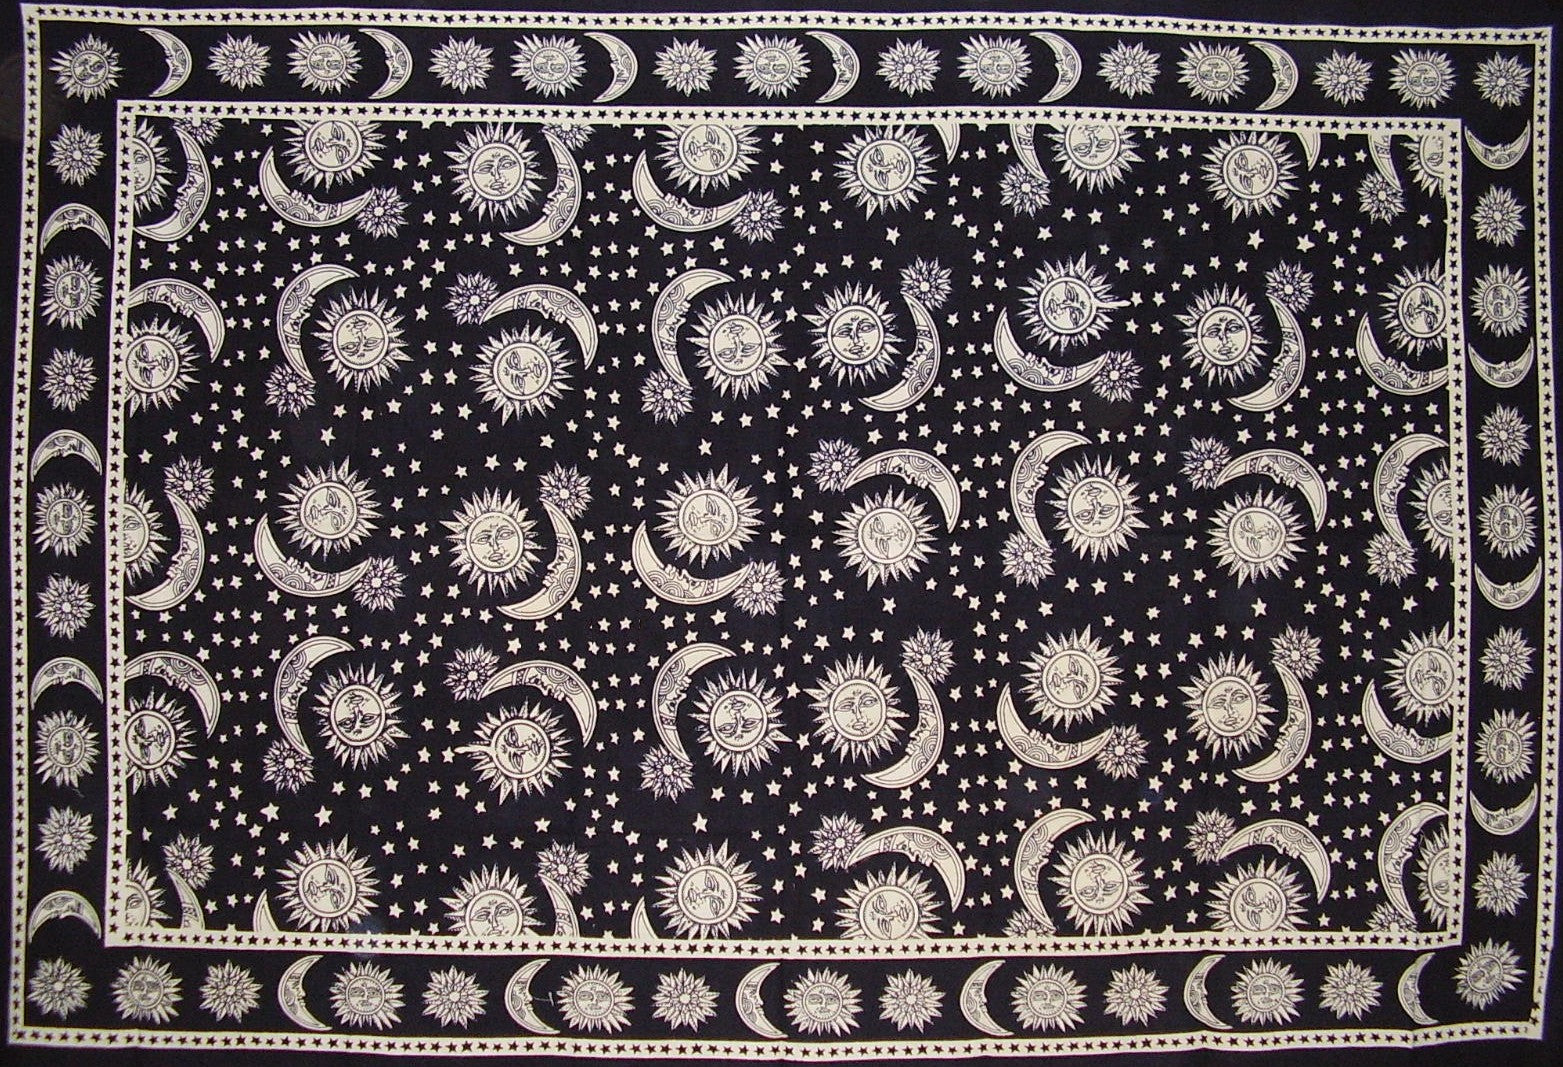 棉质天体铺布或桌布 90 英寸 x 60 英寸黑白